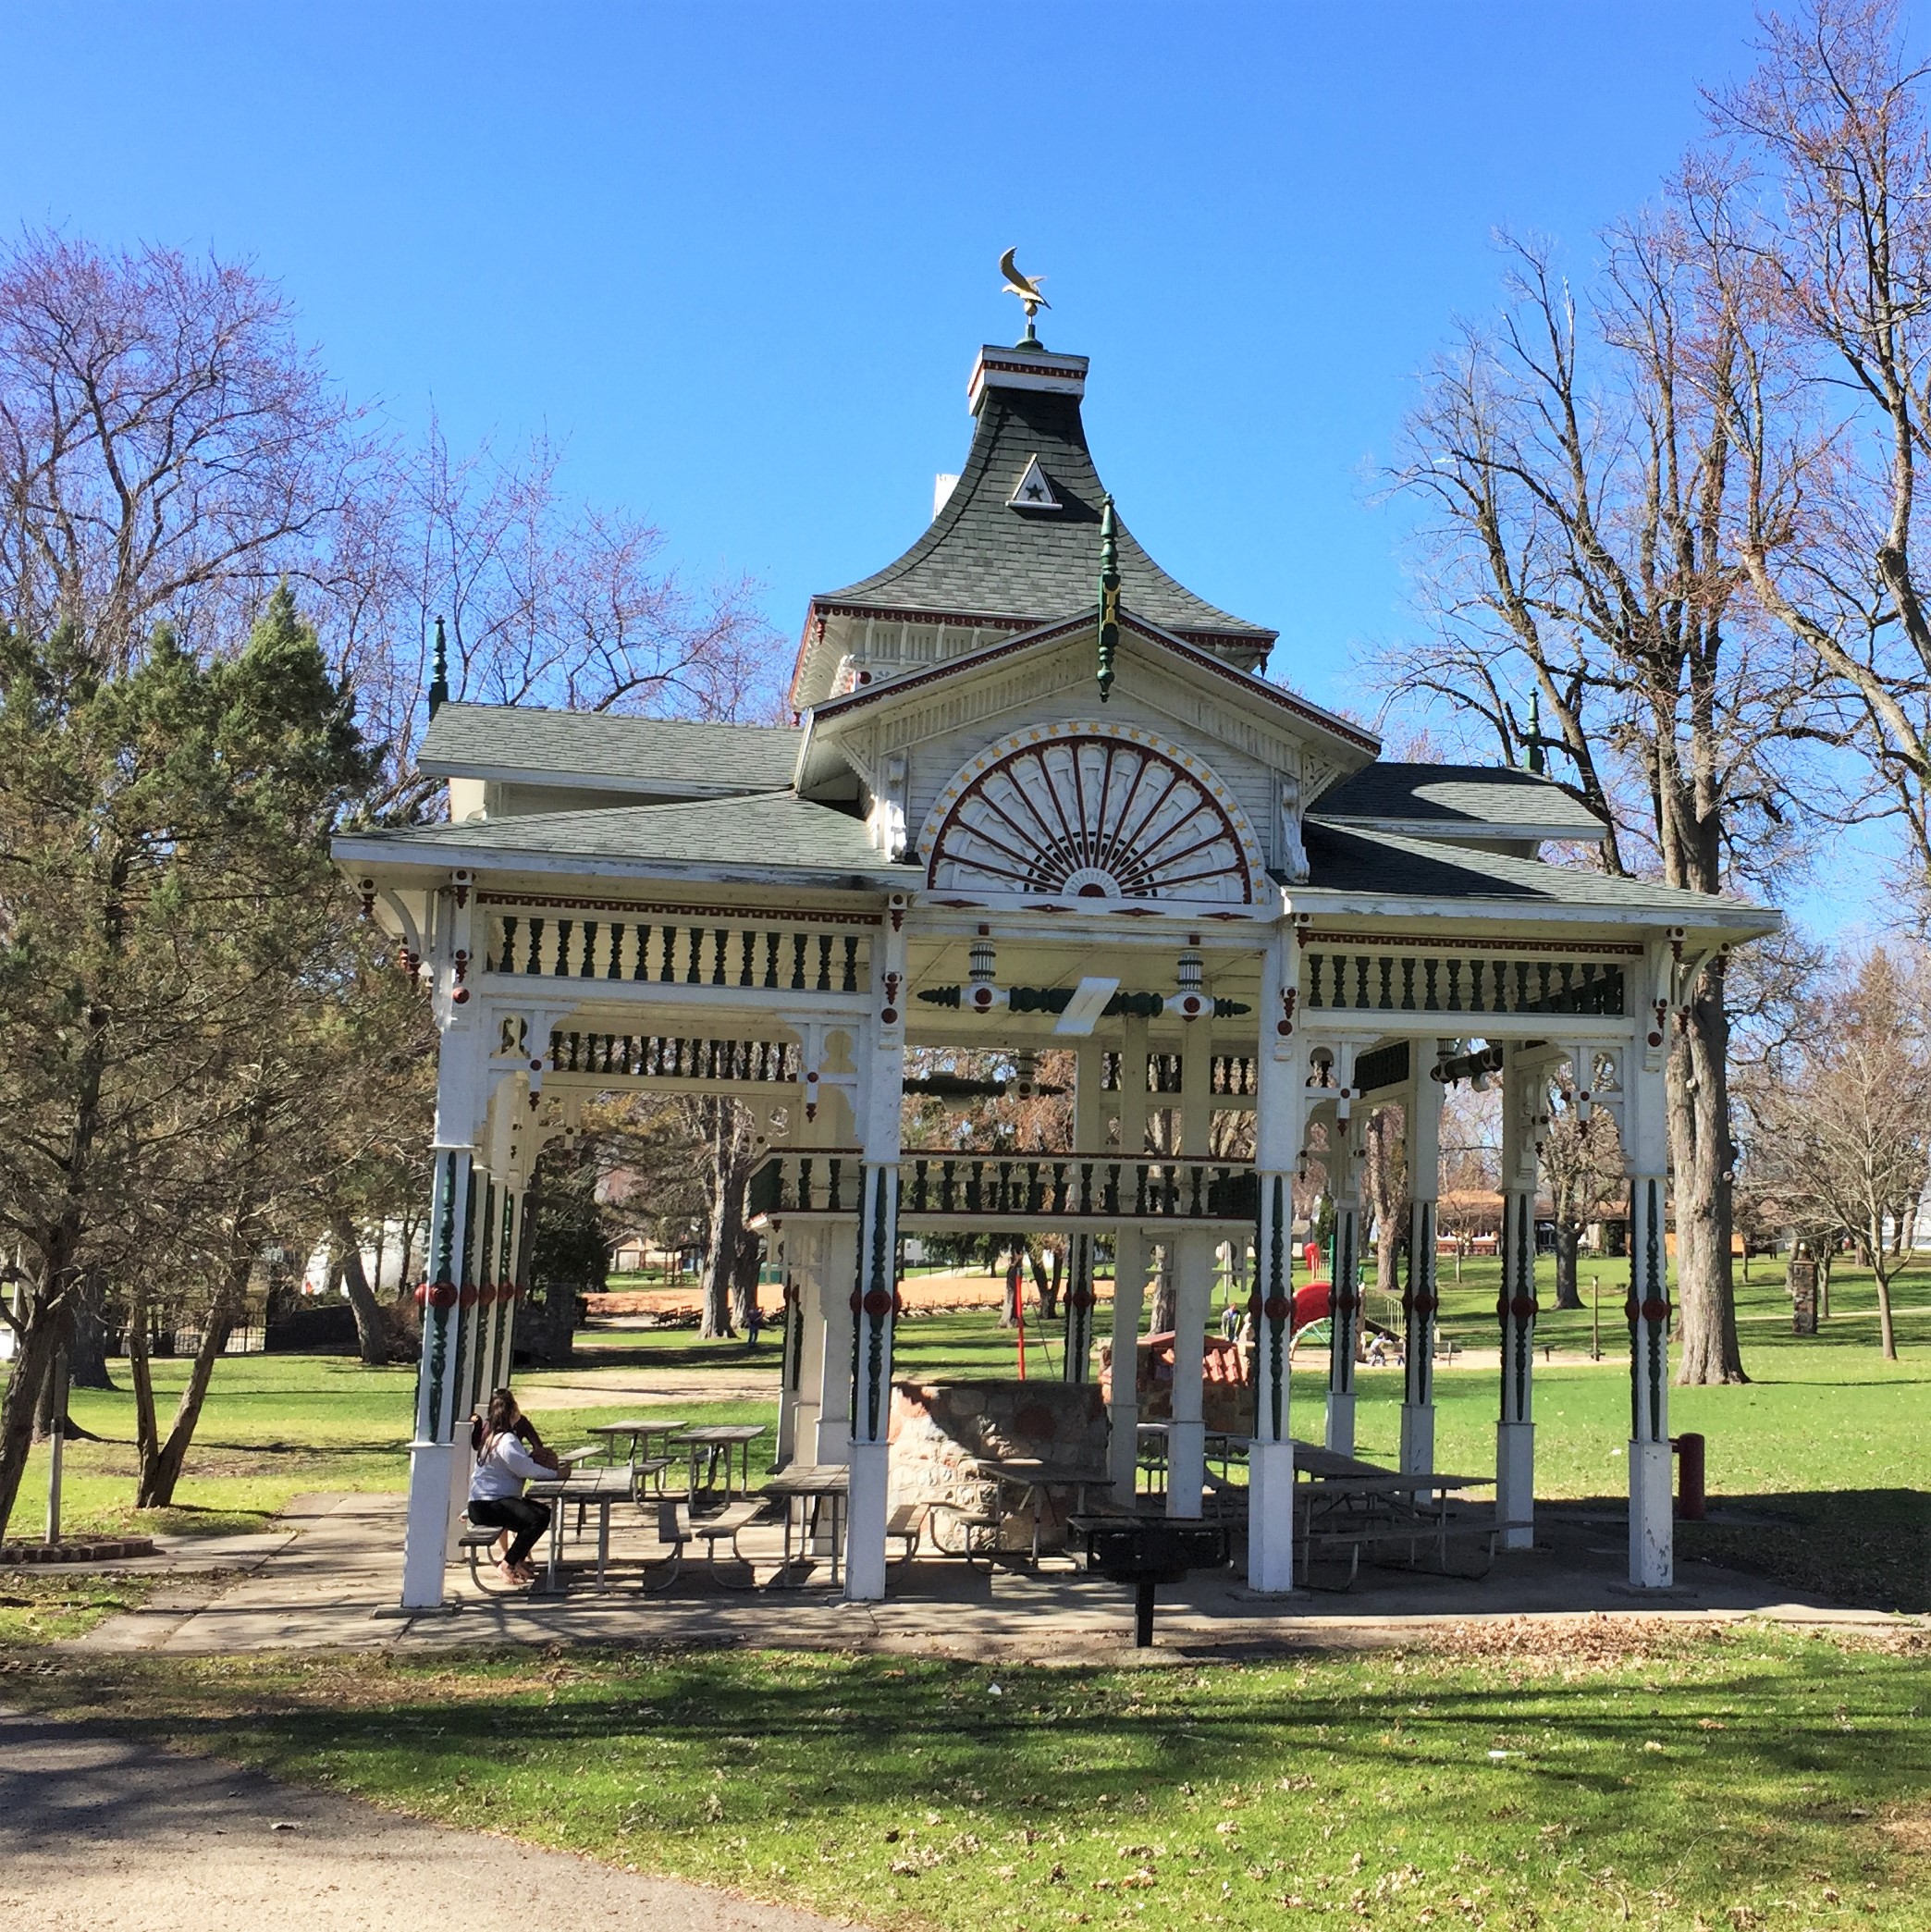 Swan Park Historic Pavilion